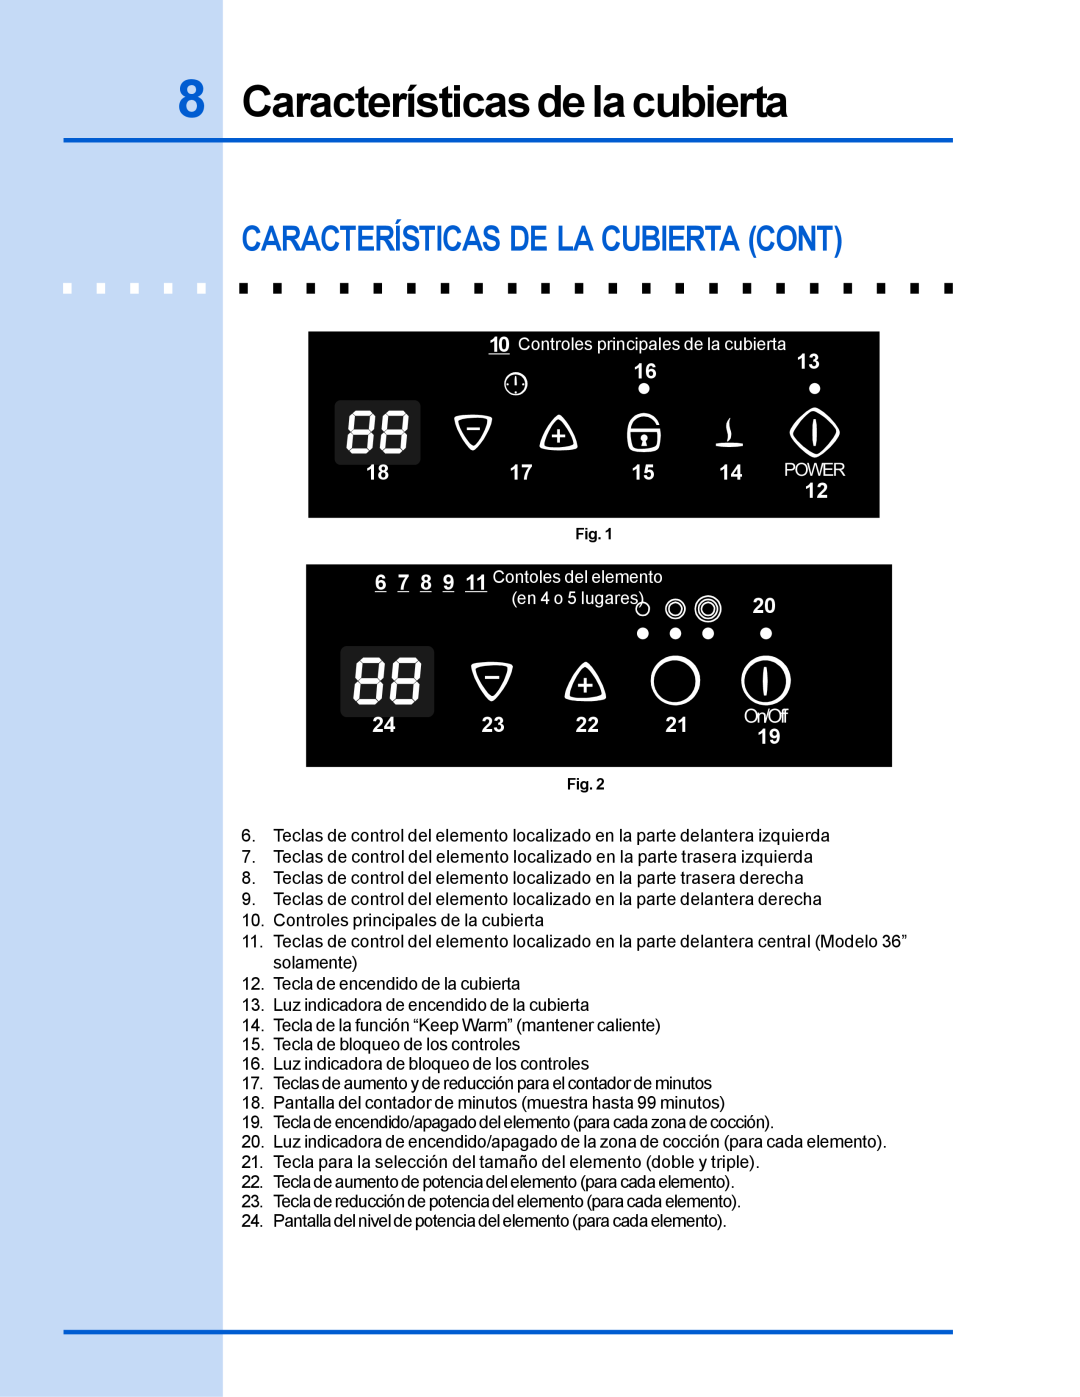 Electrolux 318 200 635 manual Características de la cubierta, Características De La Cubierta Cont, 1613, en 4 o 5 lugares 